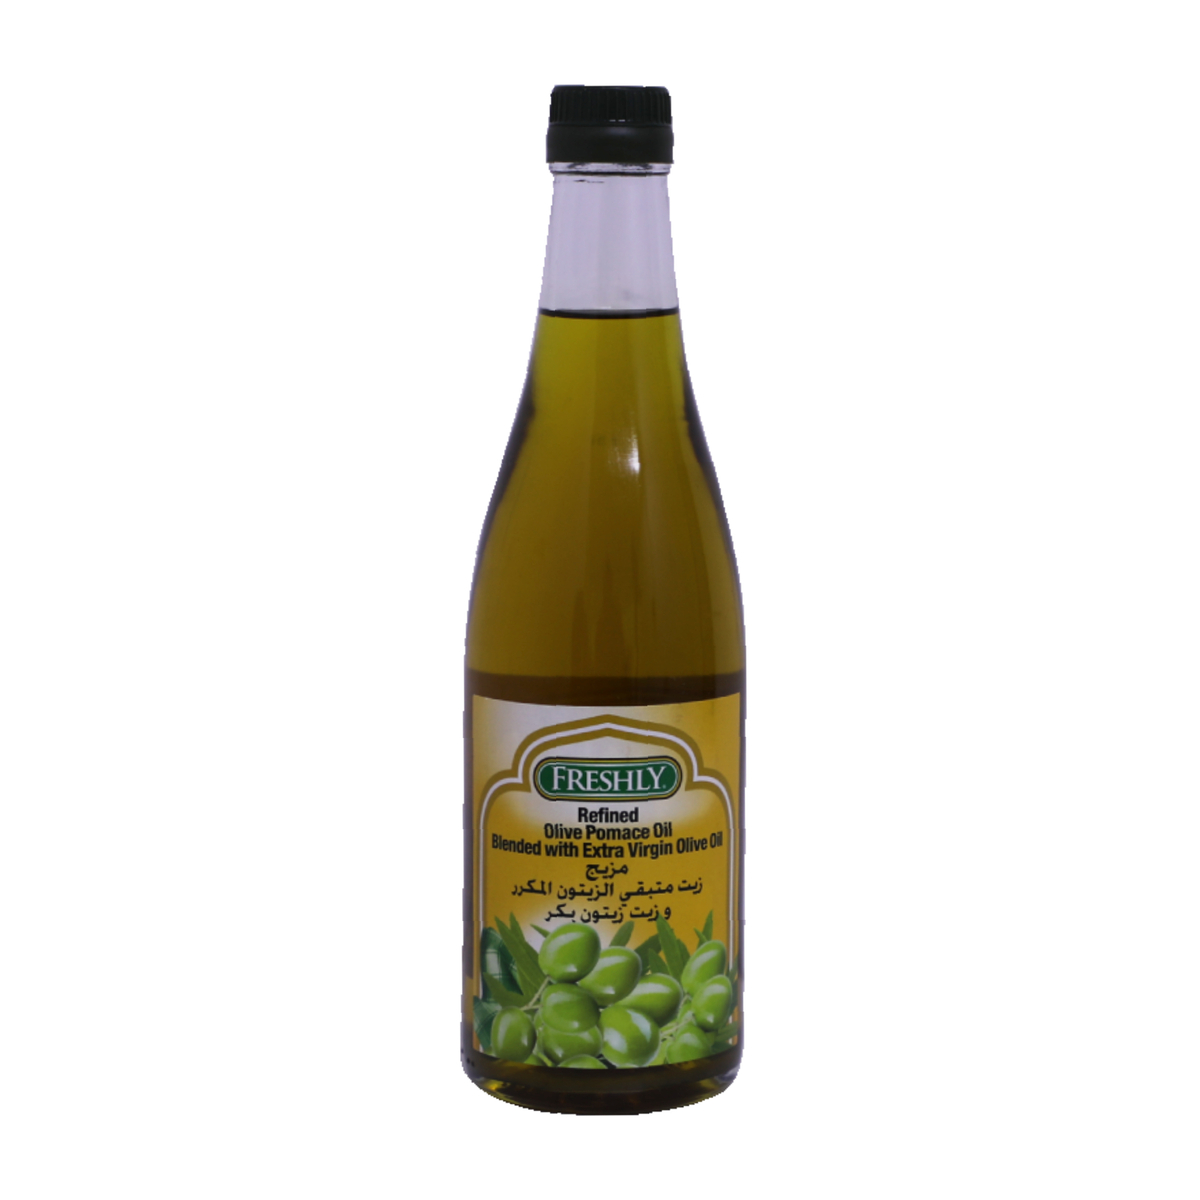 Freshly Refined Olive Pomace Oil 500ml